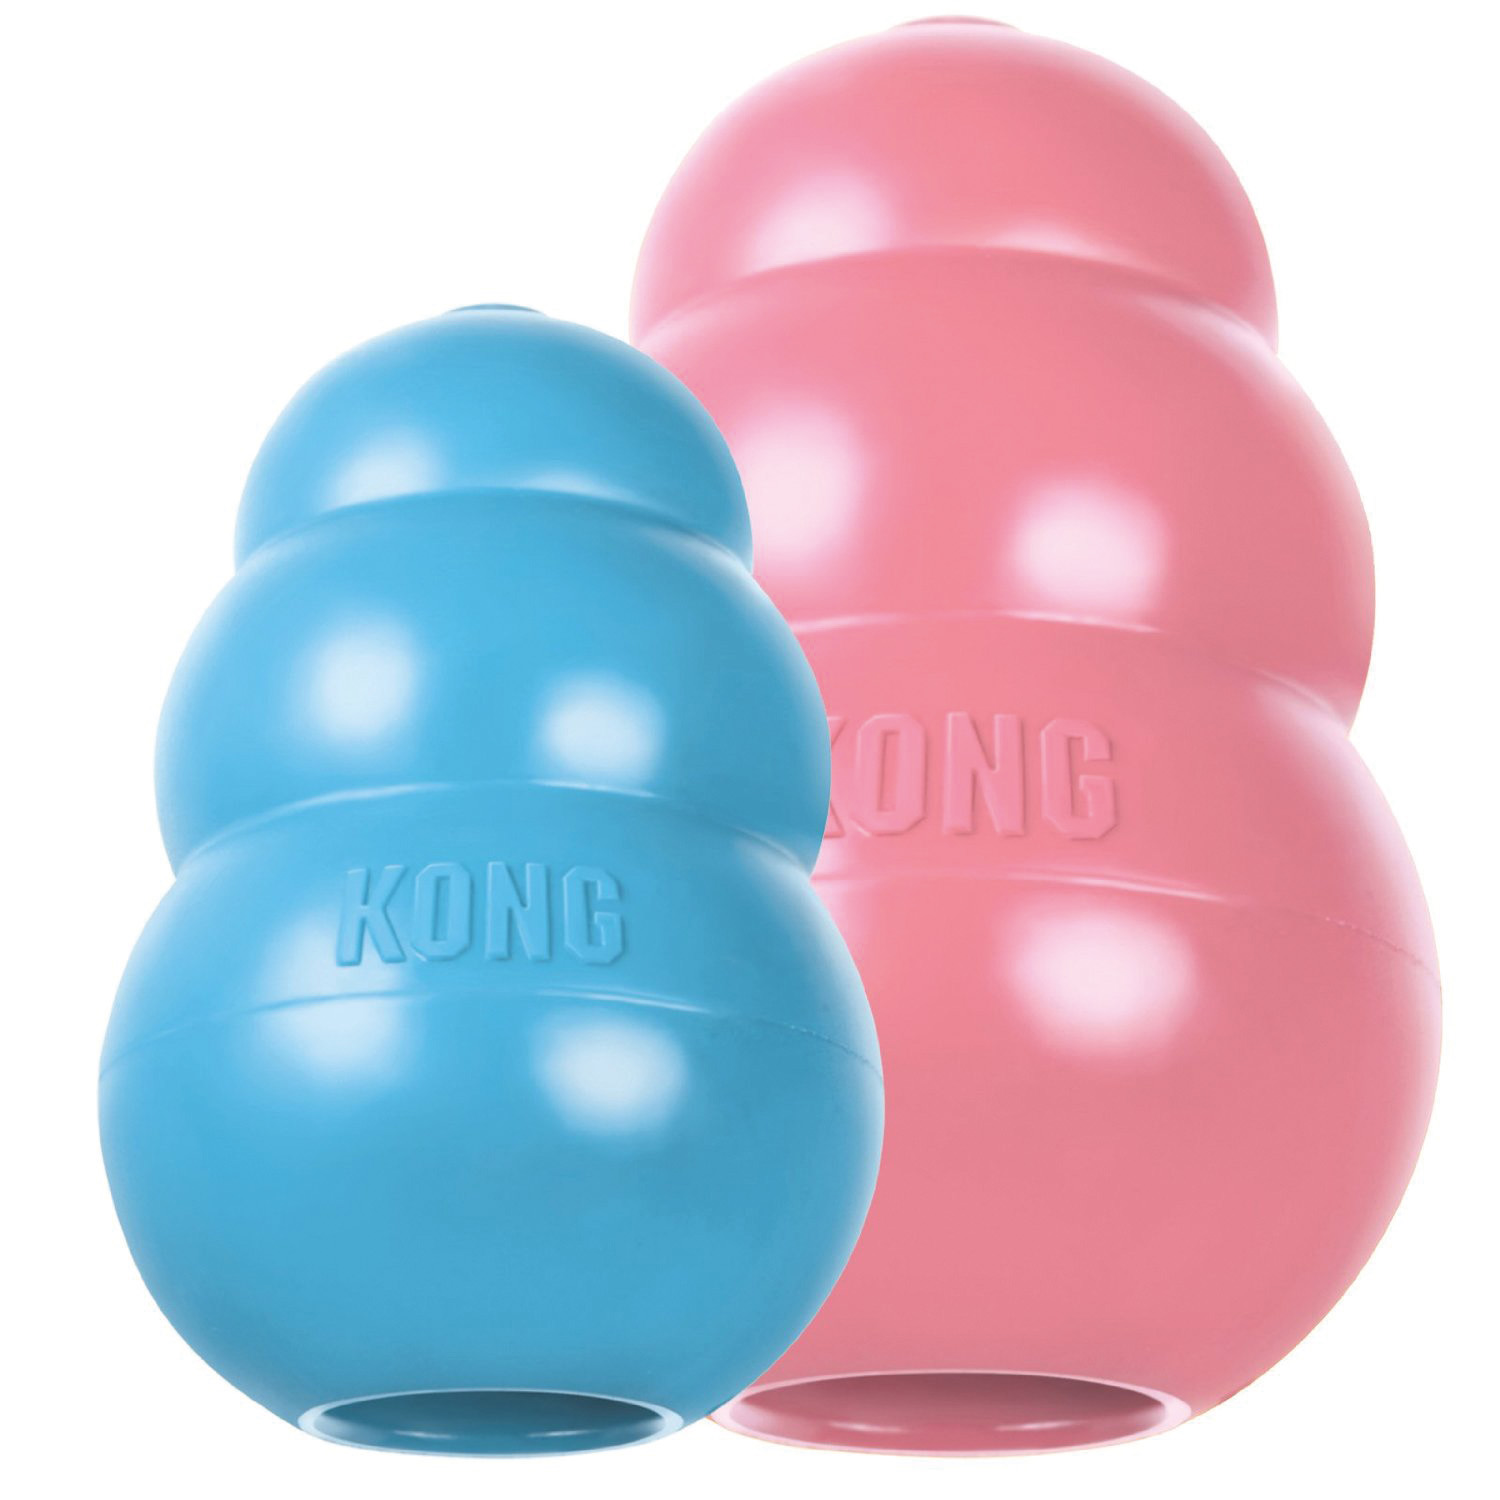 KONG PUPPY CLASSIC MEDIUM PINK/BLUE